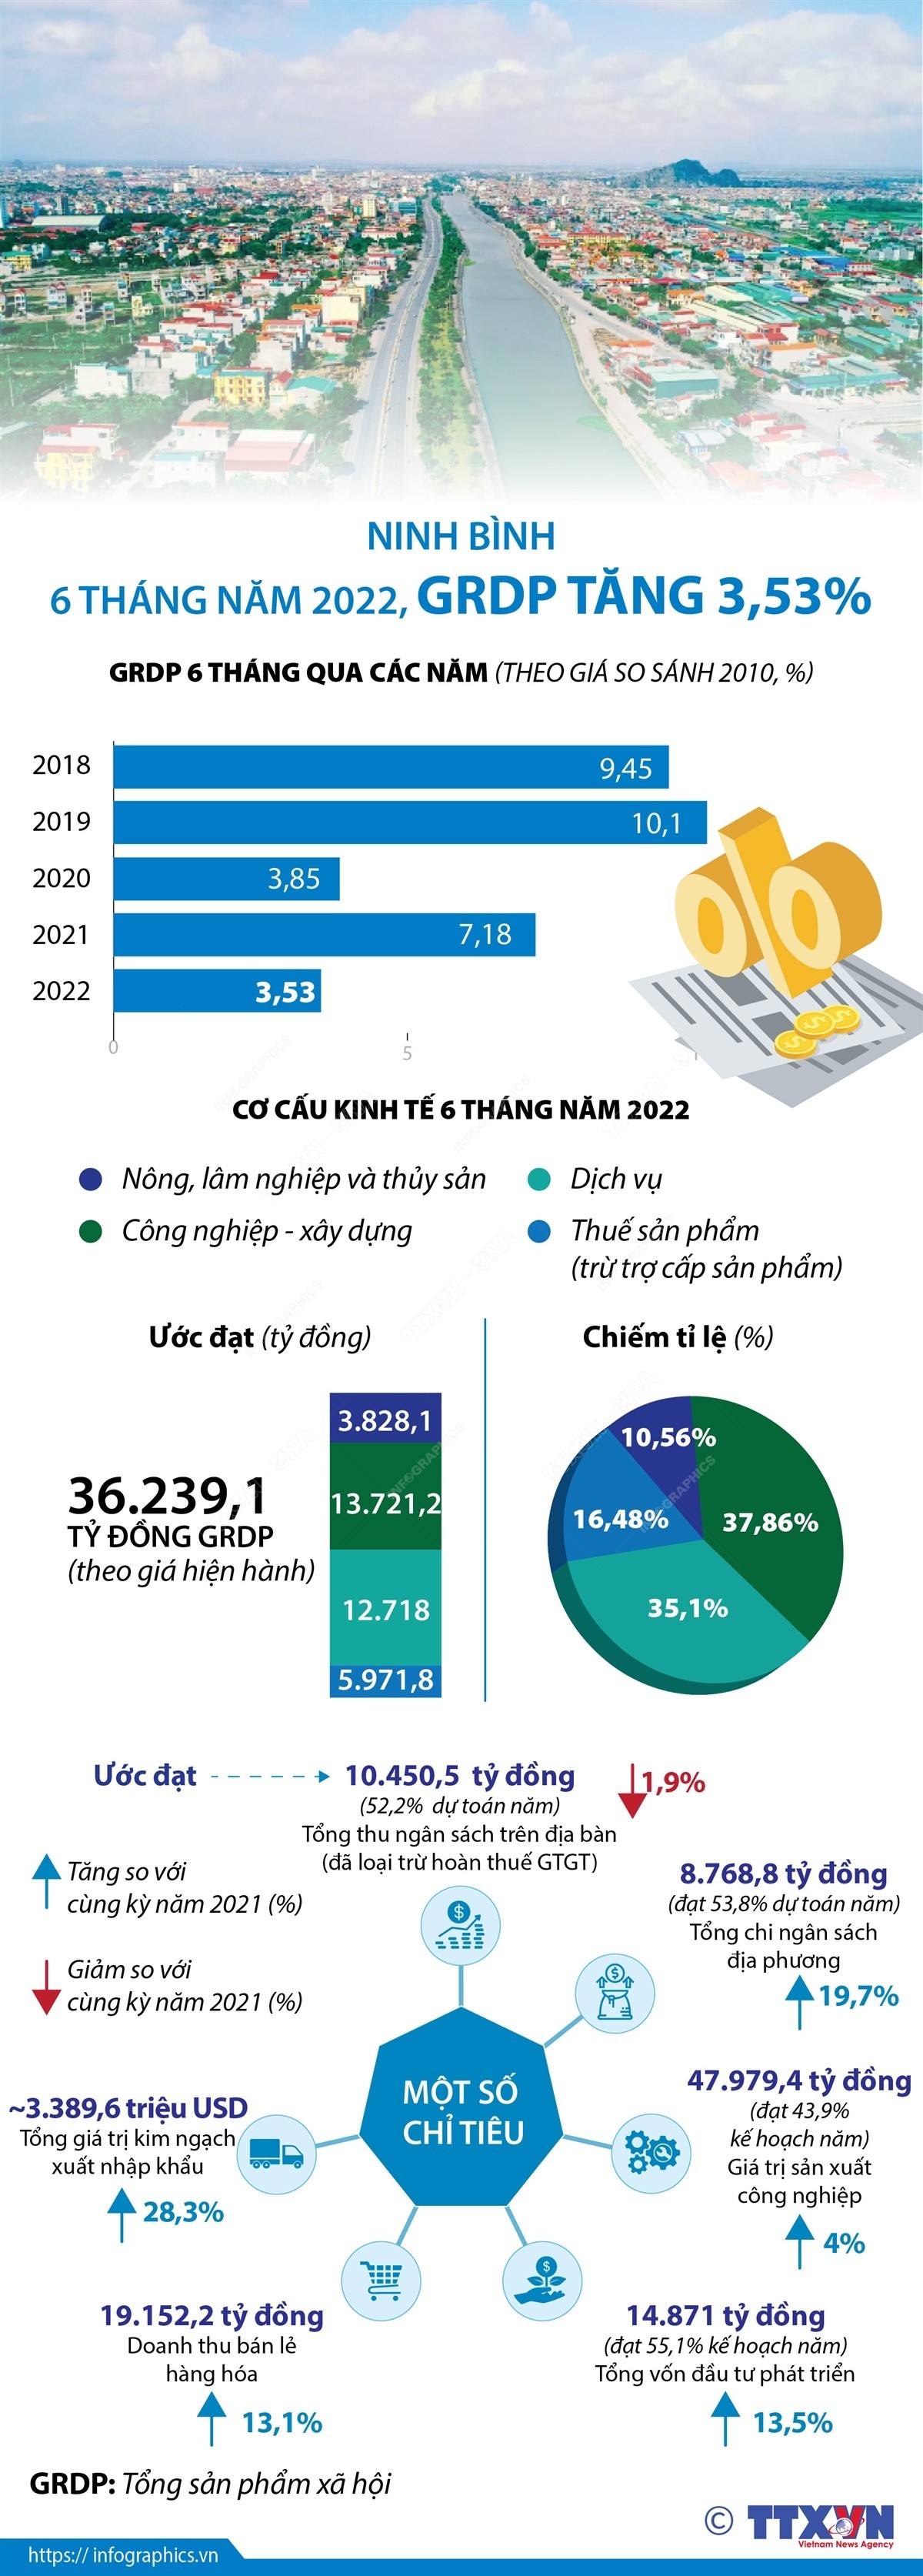 Ninh Bình: 6 tháng năm 2022, GRDP tăng 3,53%